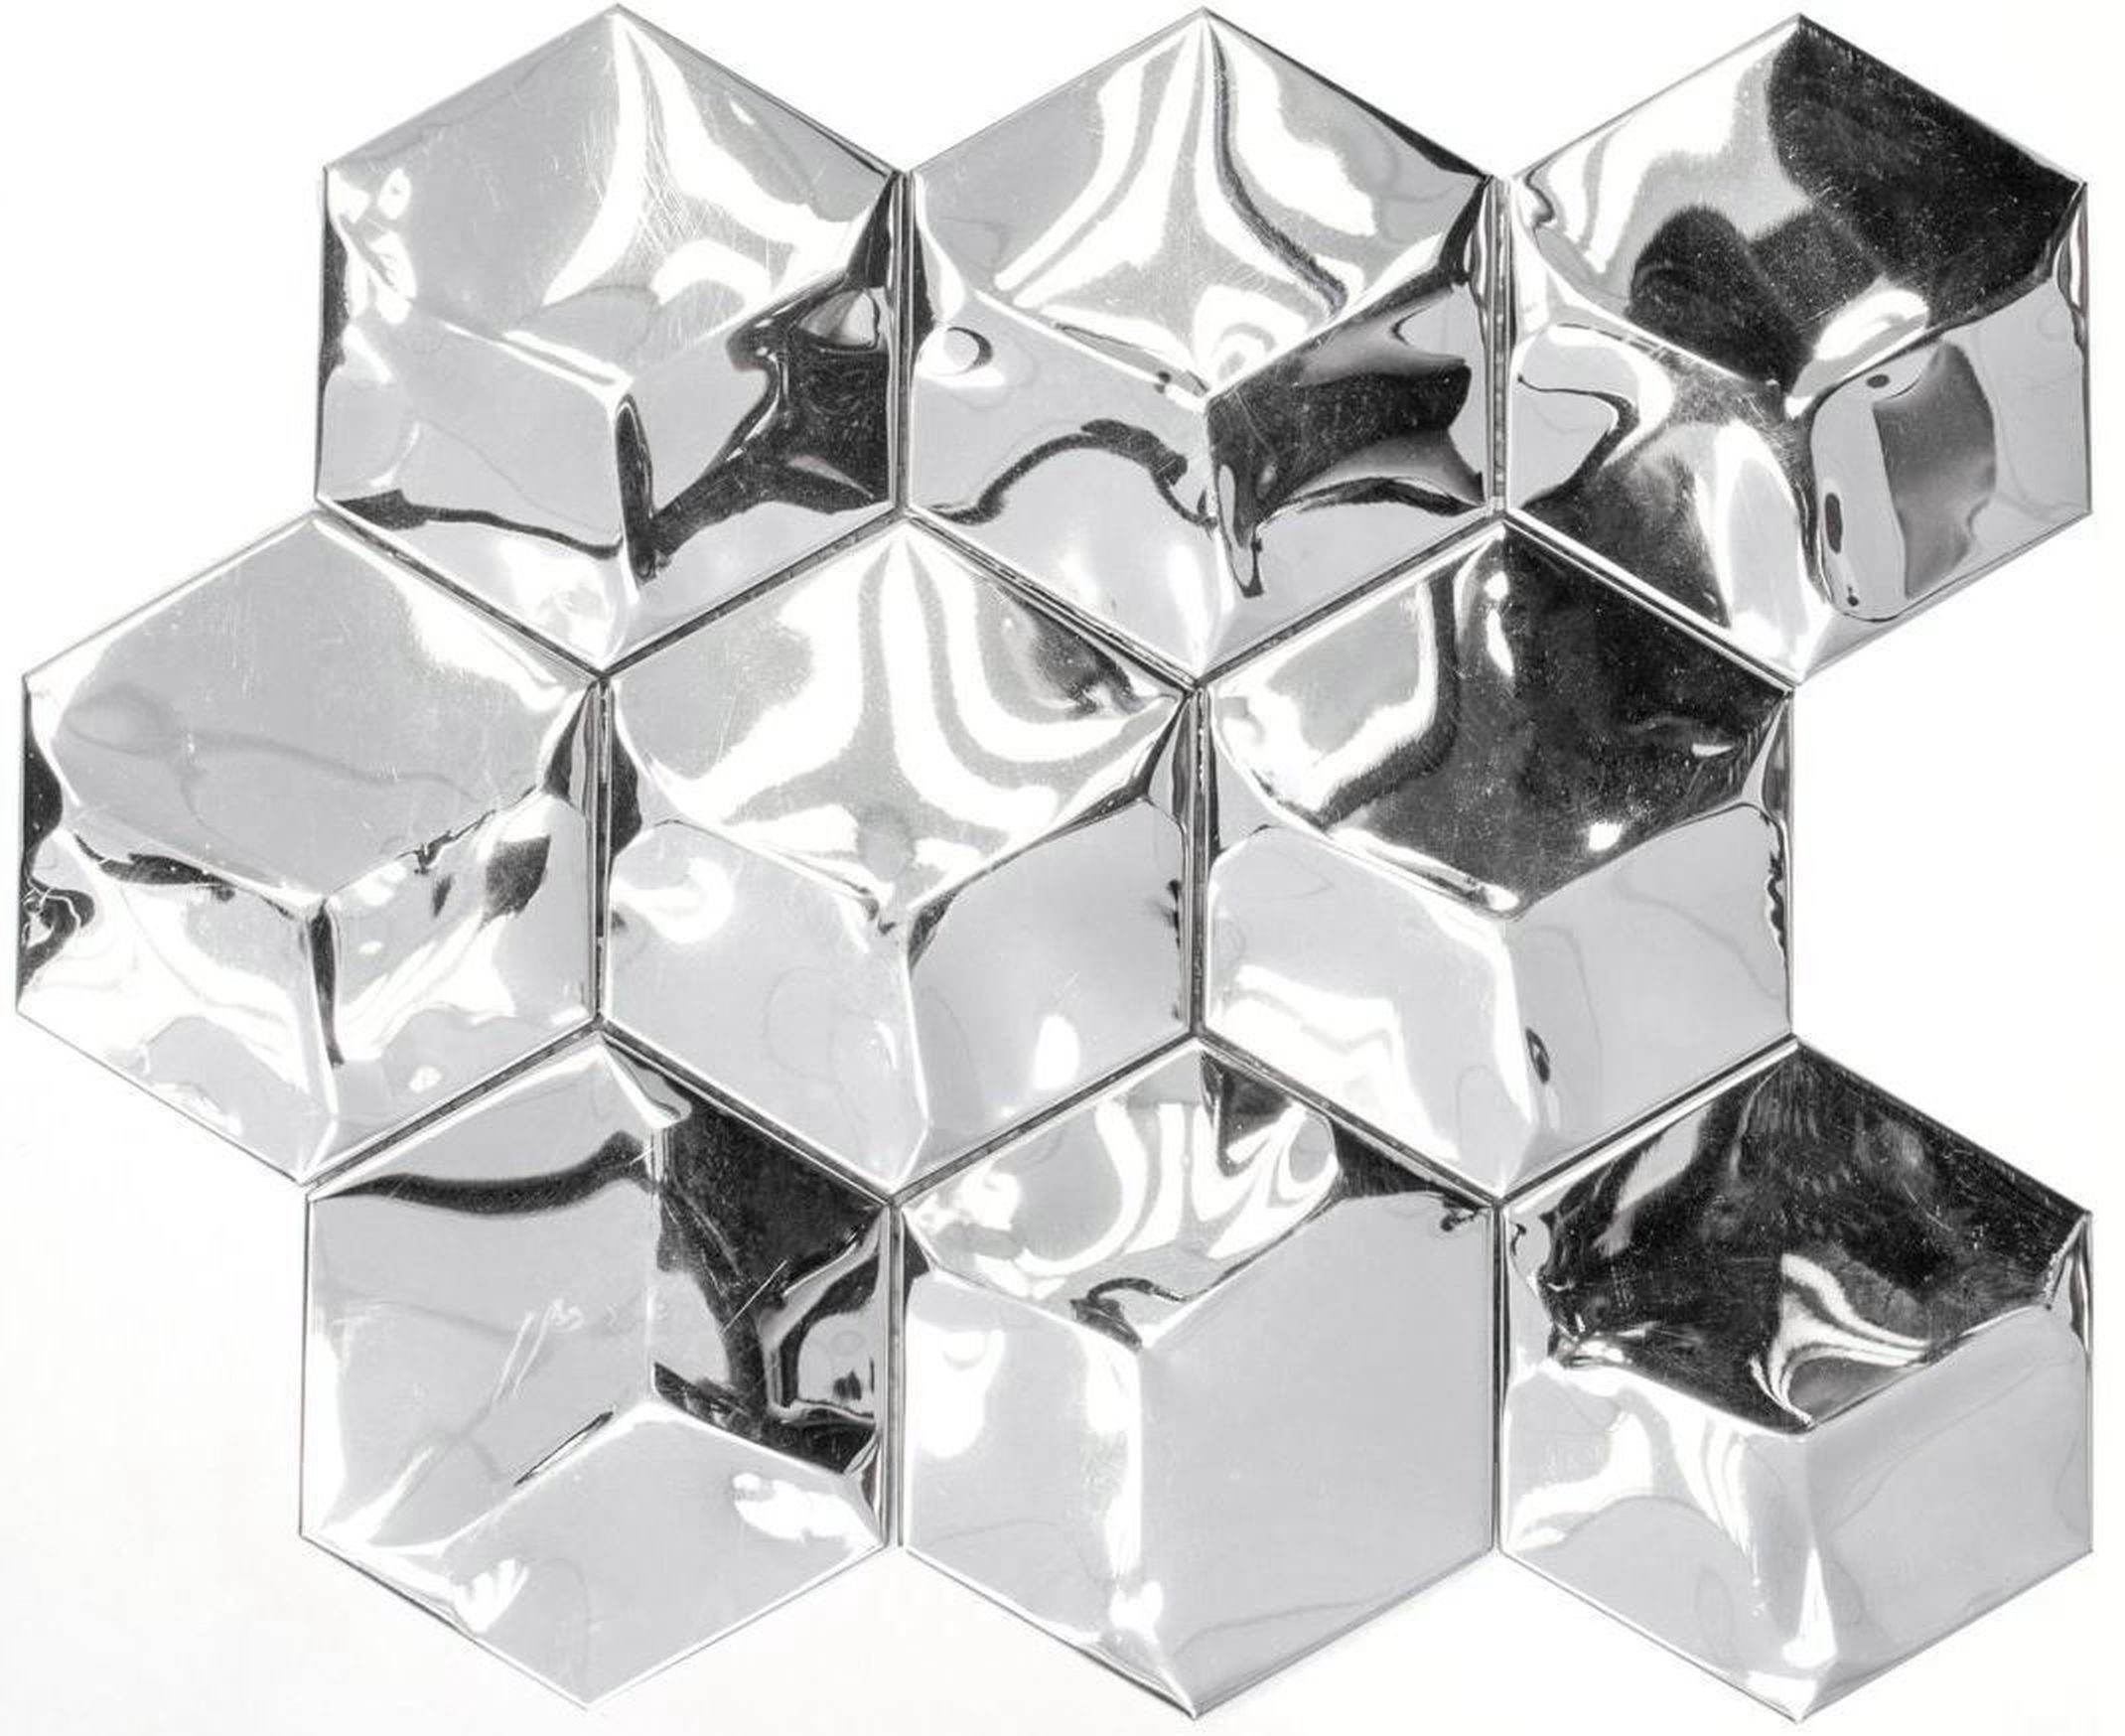 Mosani Mosaikfliesen Edelstahl Mosaik Fliese silber Hexagon 3D glänzend Küchenwand